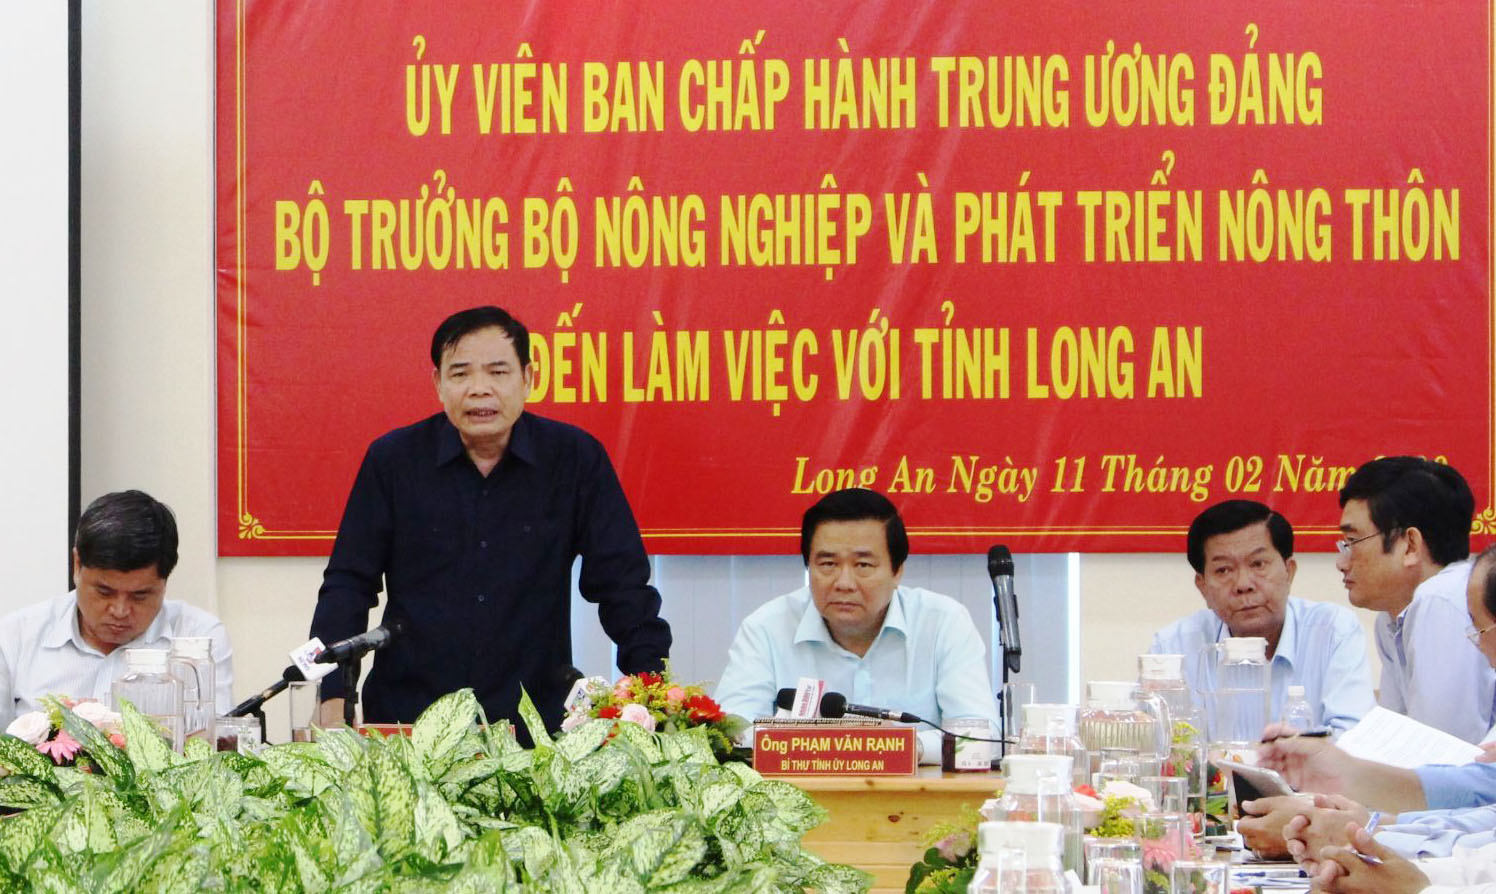 Bộ trưởng Bộ Nông nghiệp và Phát triển nông thôn - Nguyễn Xuân Cường phát biểu tại buổi khảo sát